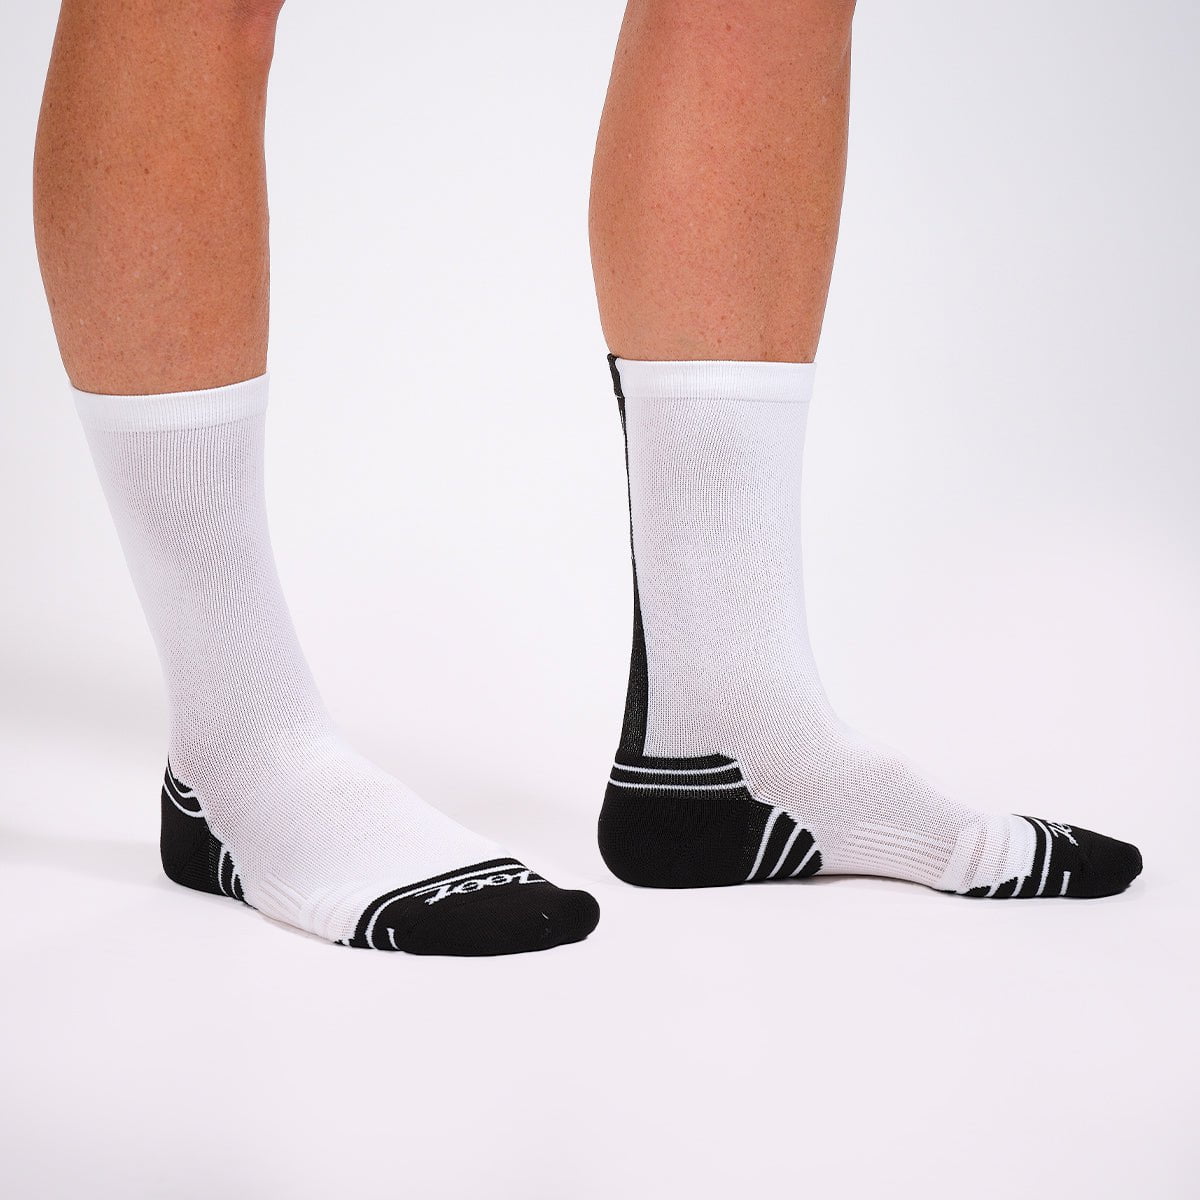 Zoot Sports SOCKS Unisex 6" Sock- White/Black